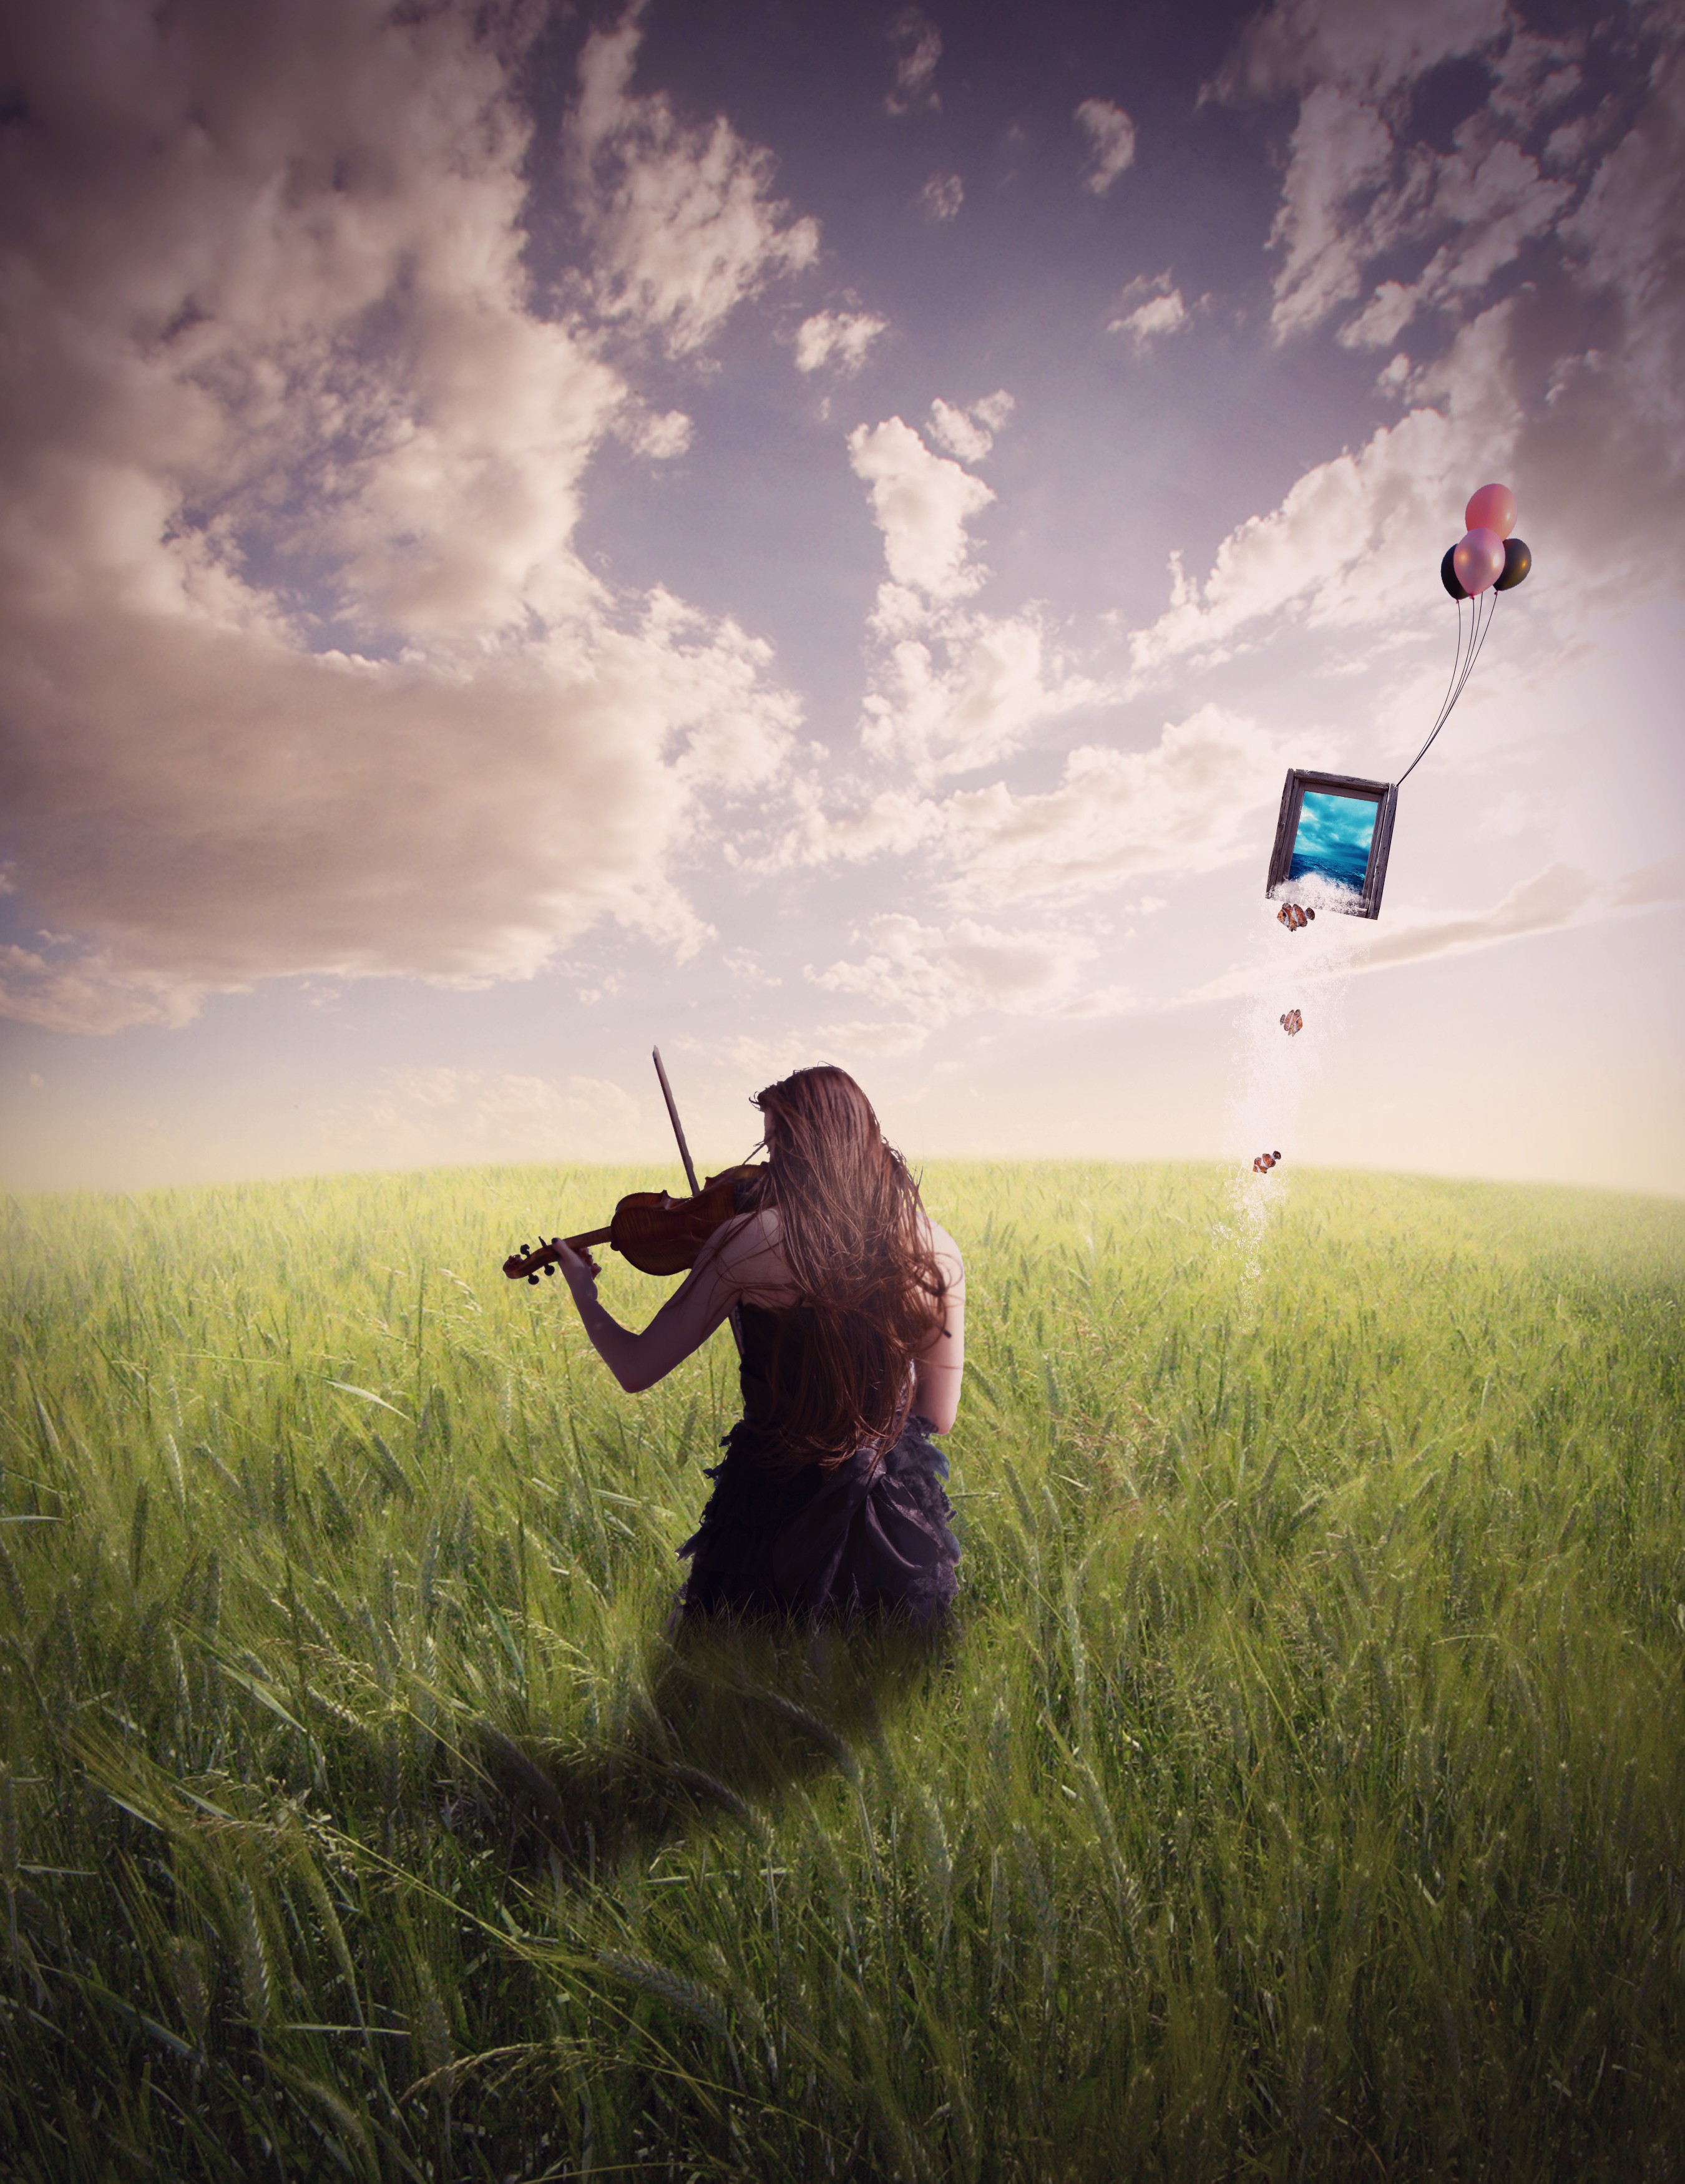 General 2700x3500 field women digital art women outdoors plants sky clouds balloon violin musical instrument long hair music